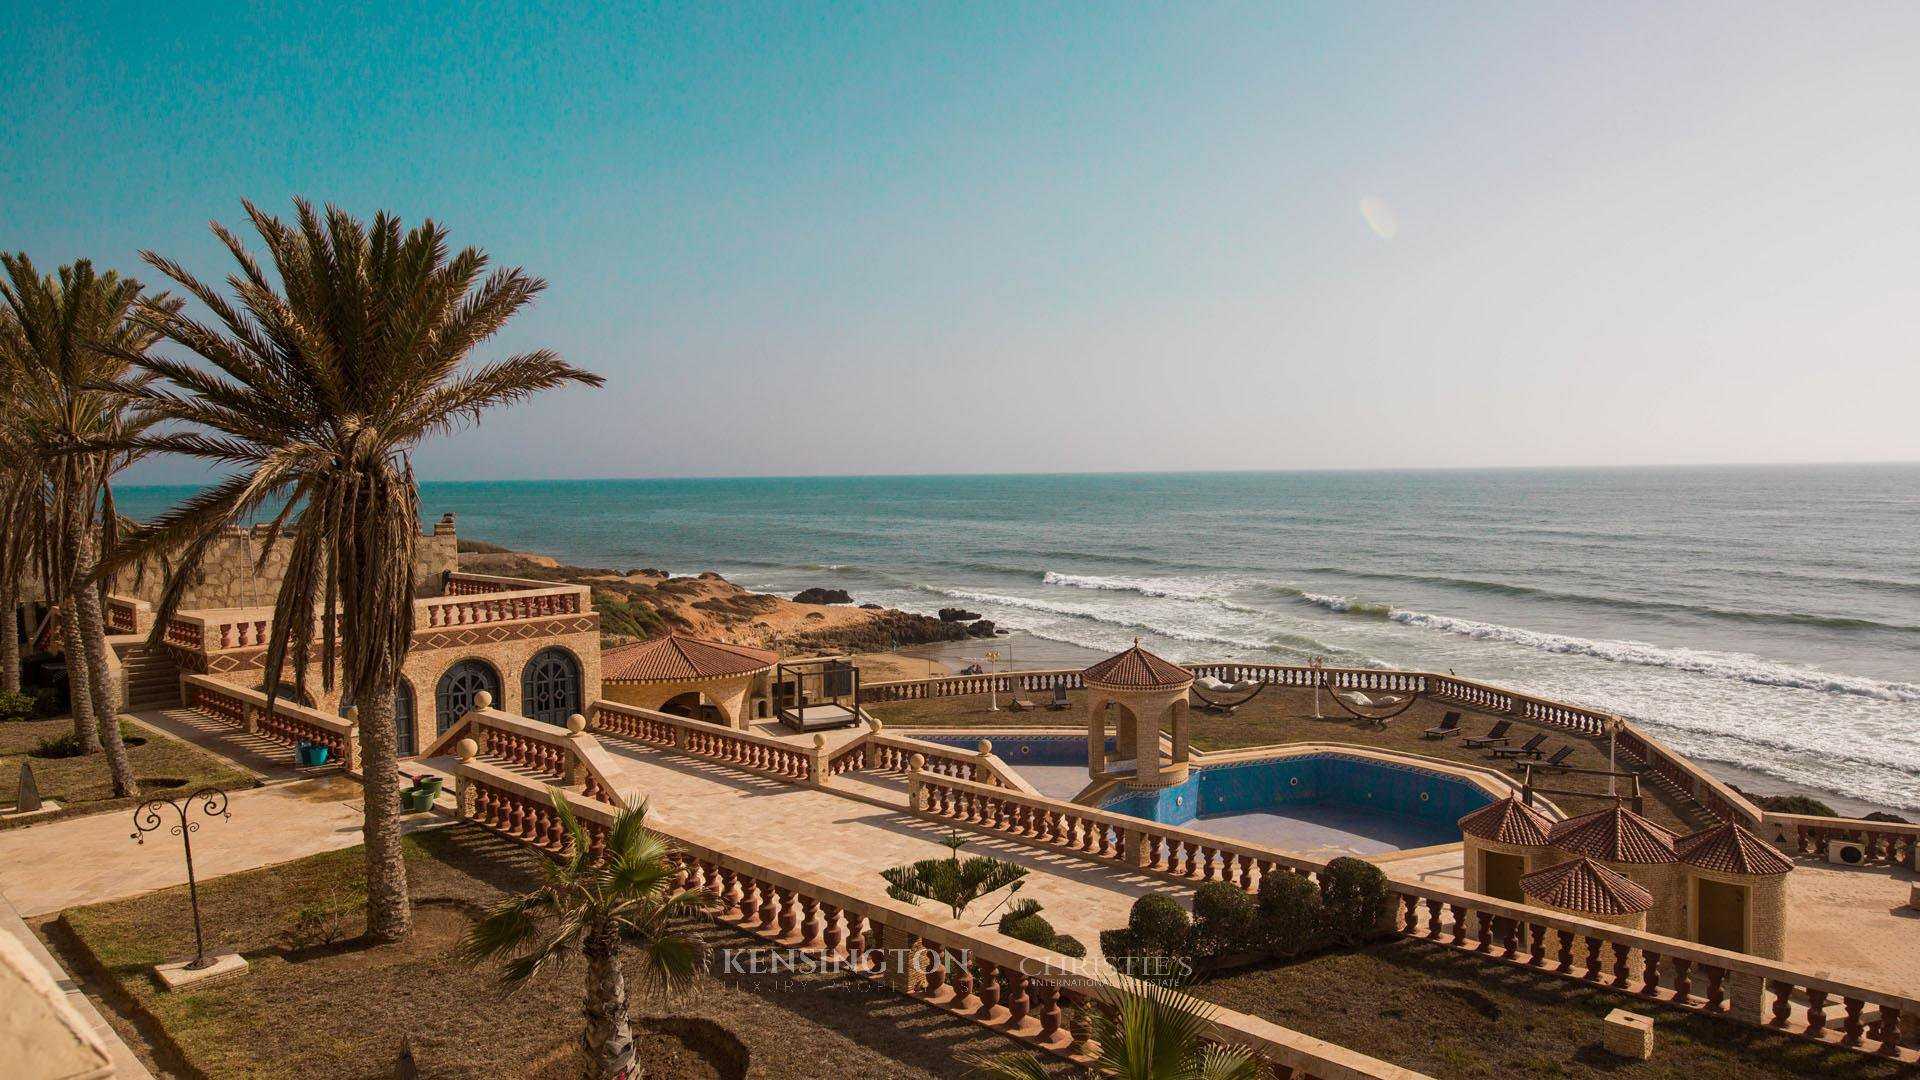 Сезон отдыха на курортах марокко (пляжный отдых): когда хорошо ехать отдыхать